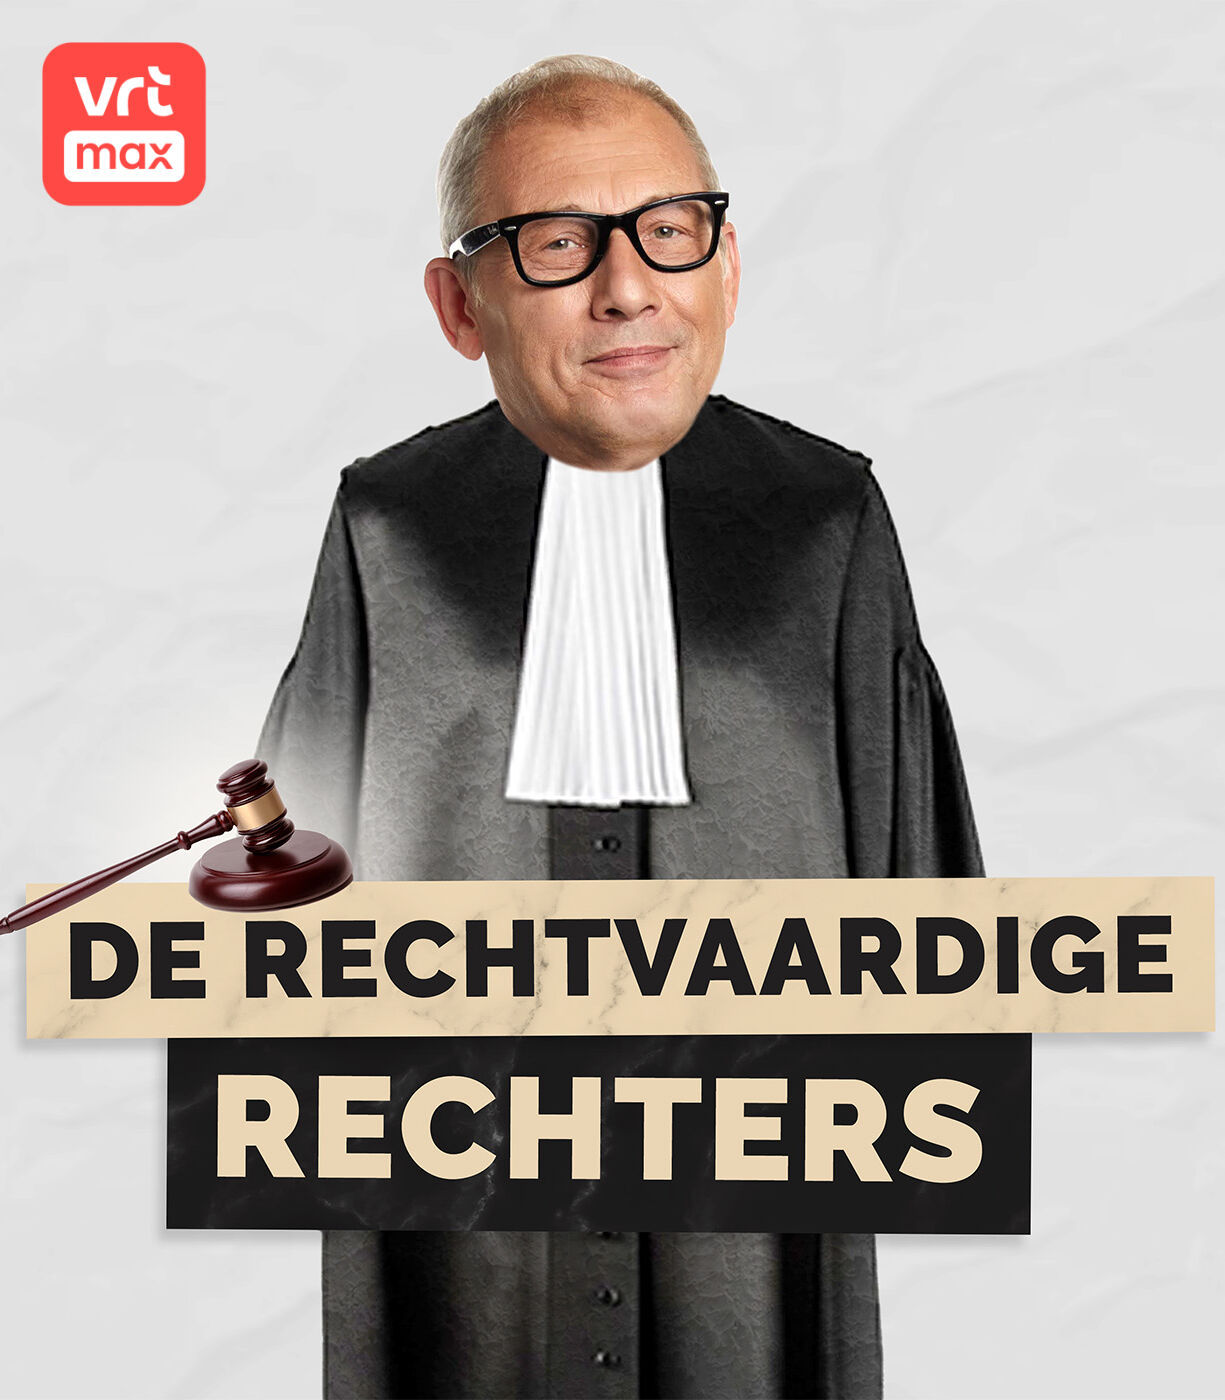 De Rechtvaardige Rechters logo